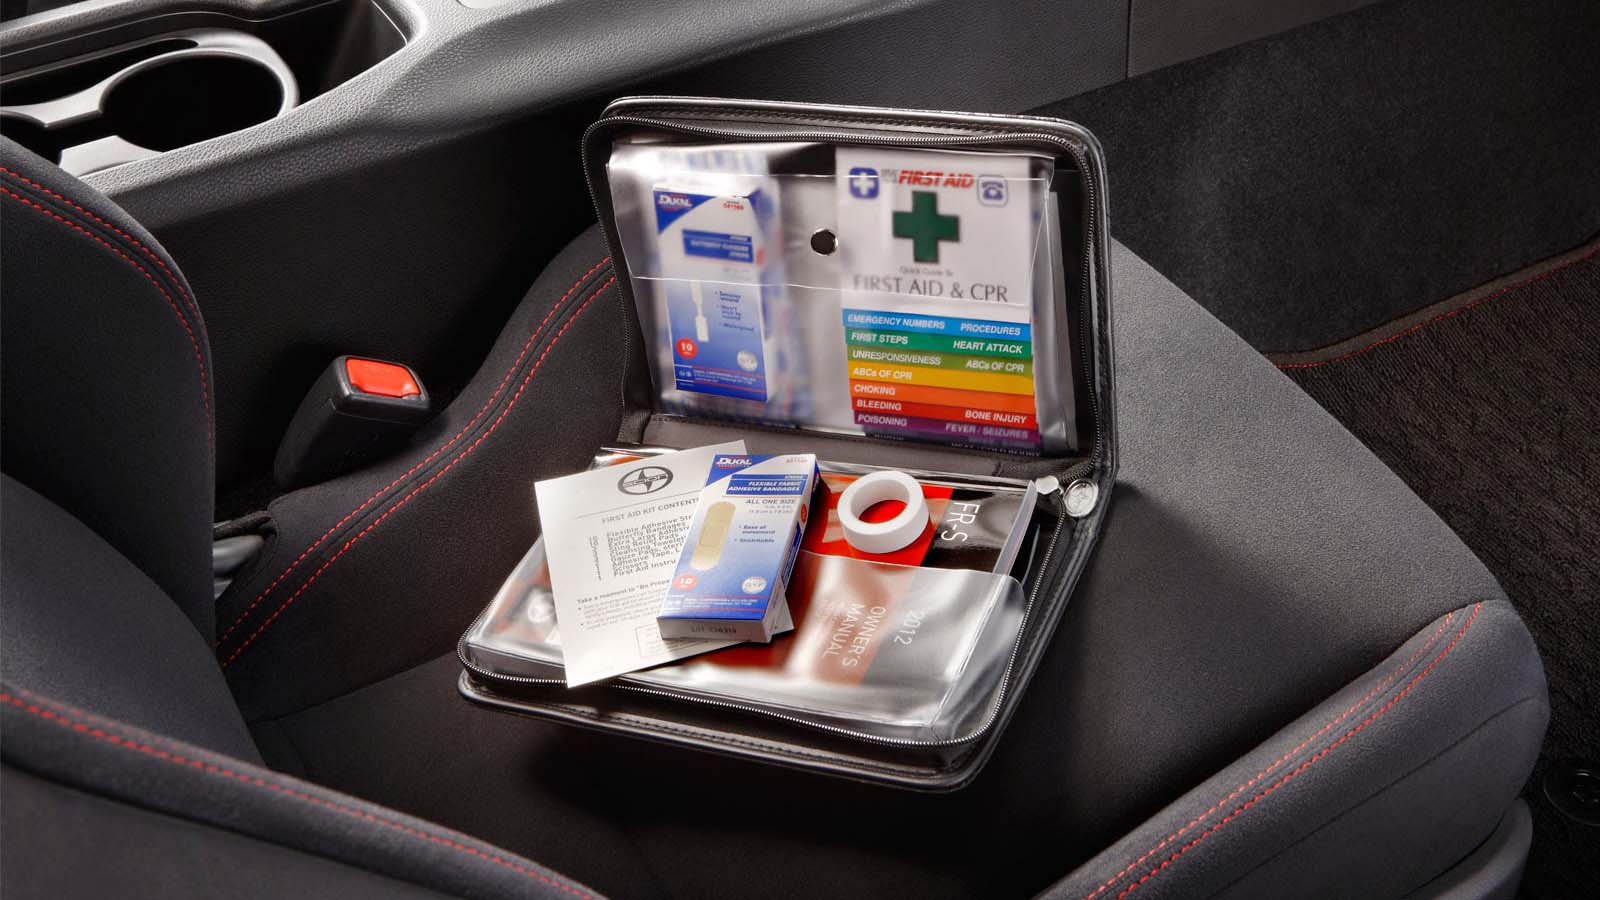 Tener un kit de emergencia puede ayudarte a auxiliar a alguien mientras llegan los paramédicos en caso de una emergencia mayor